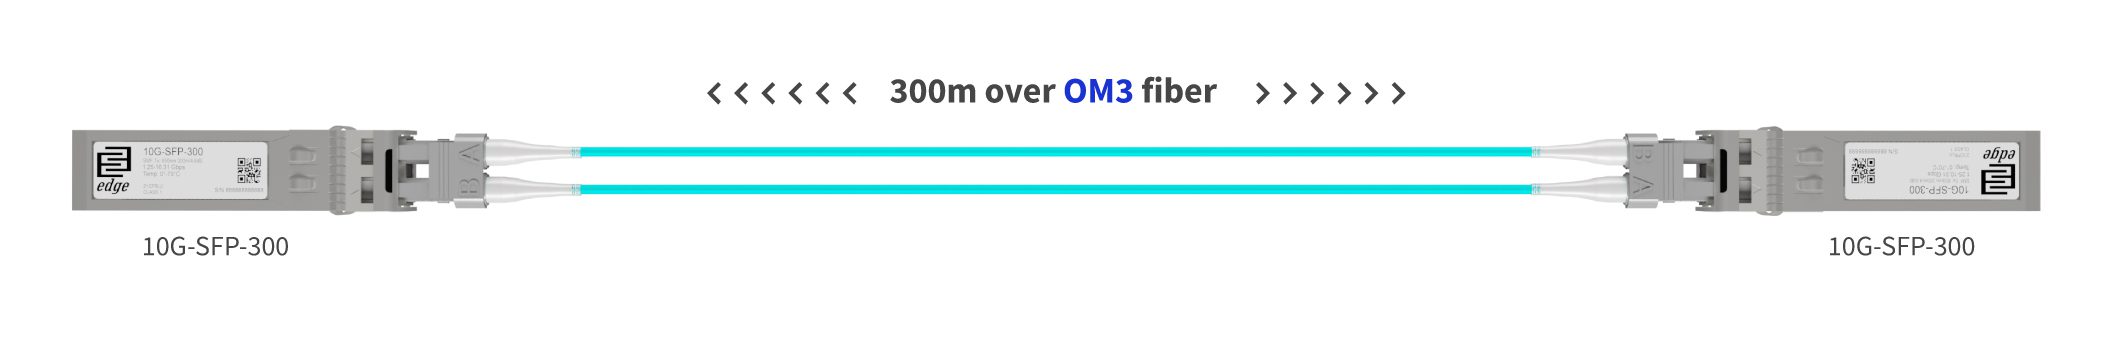 Multimode OM3 10G example